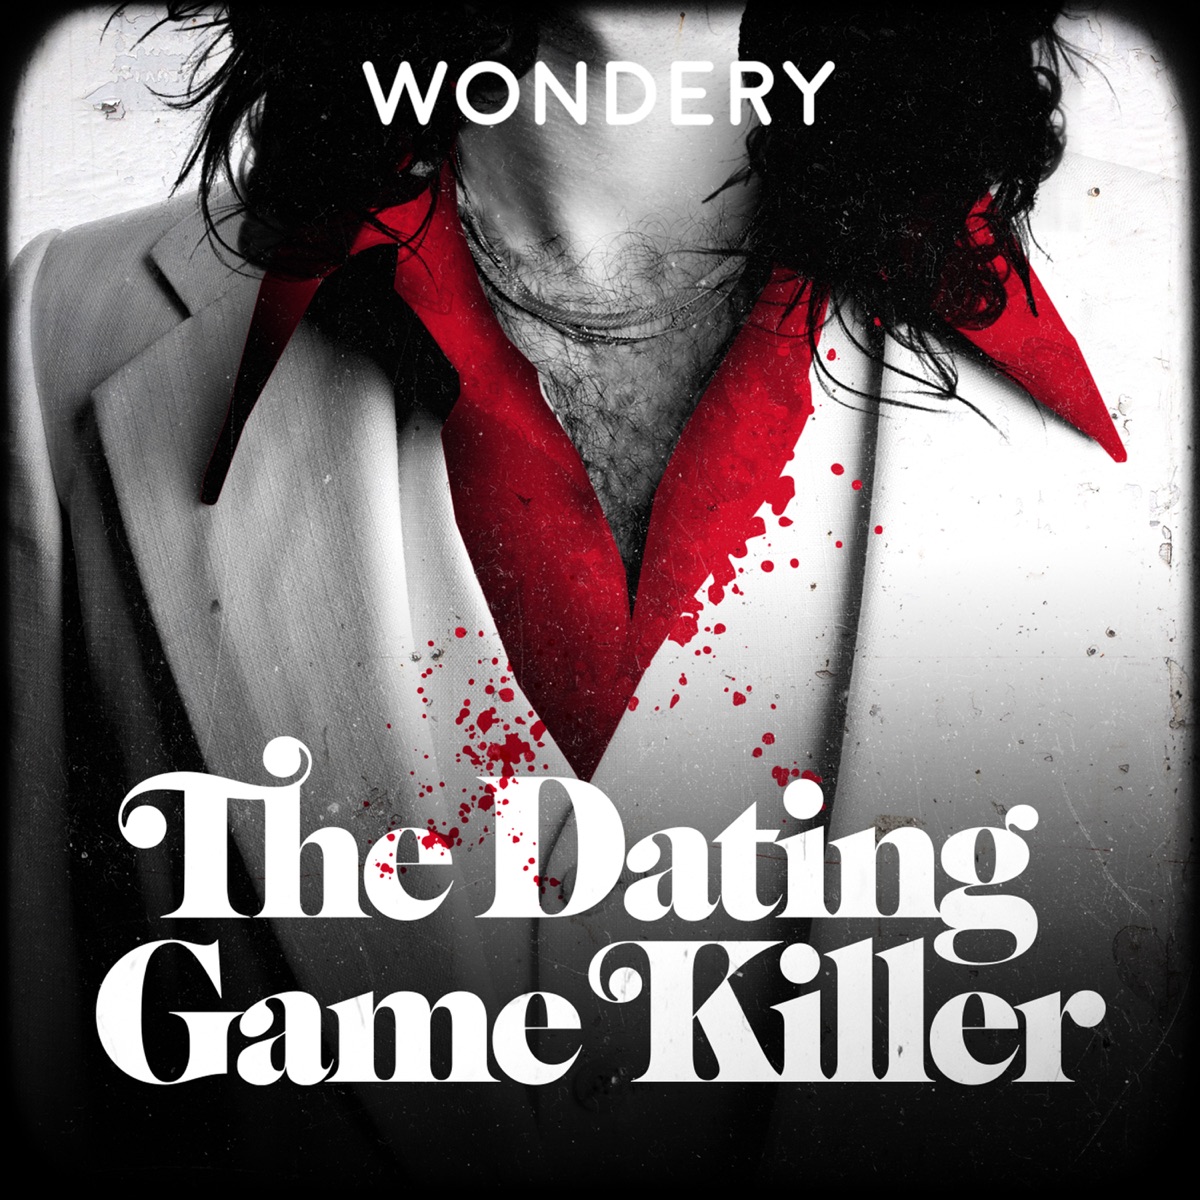 On serial dating game killer Serial Killer